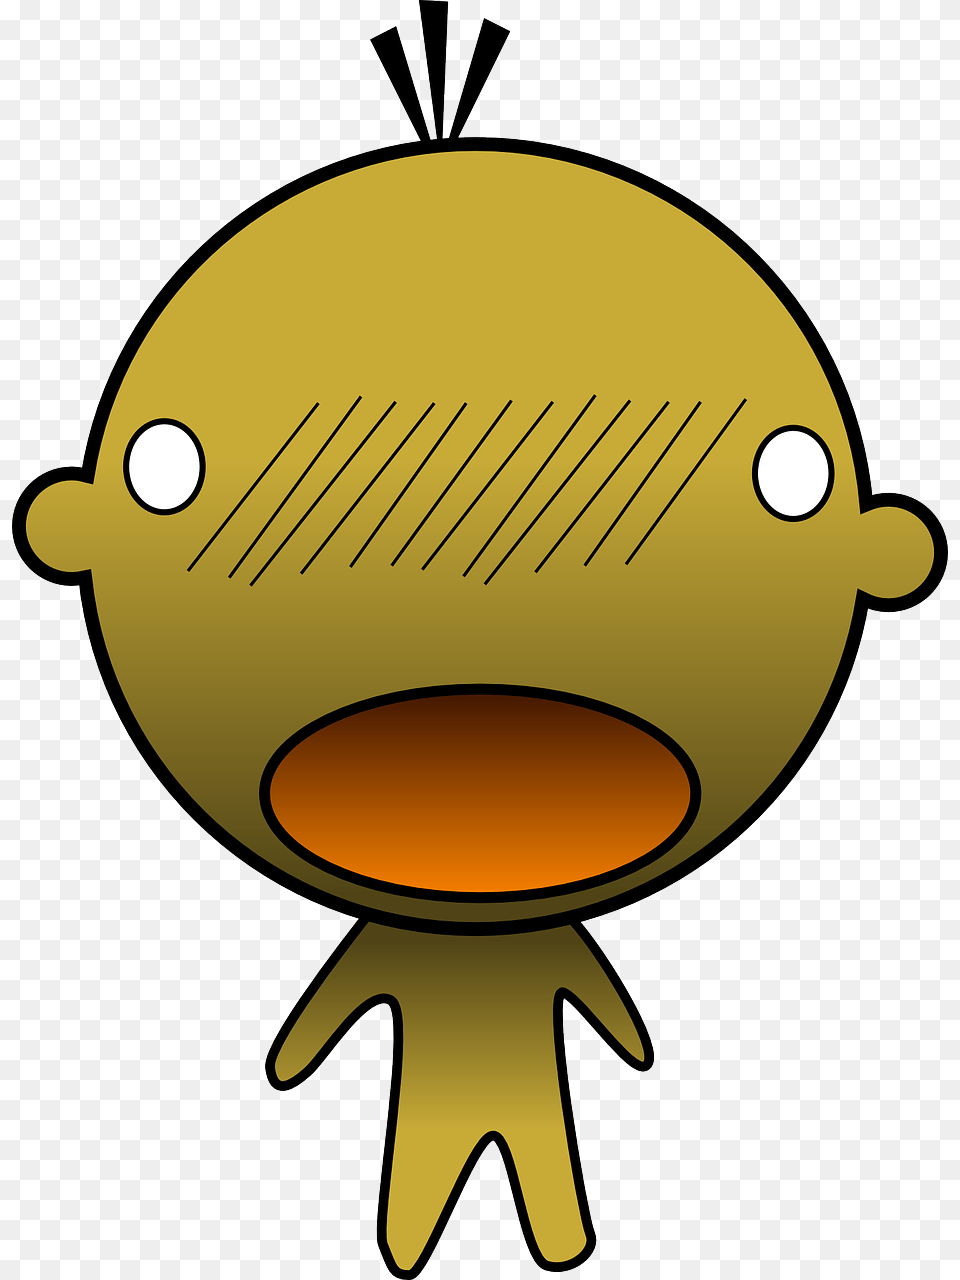 Small Cartoon Character, Food, Animal, Fish, Sea Life Png Image